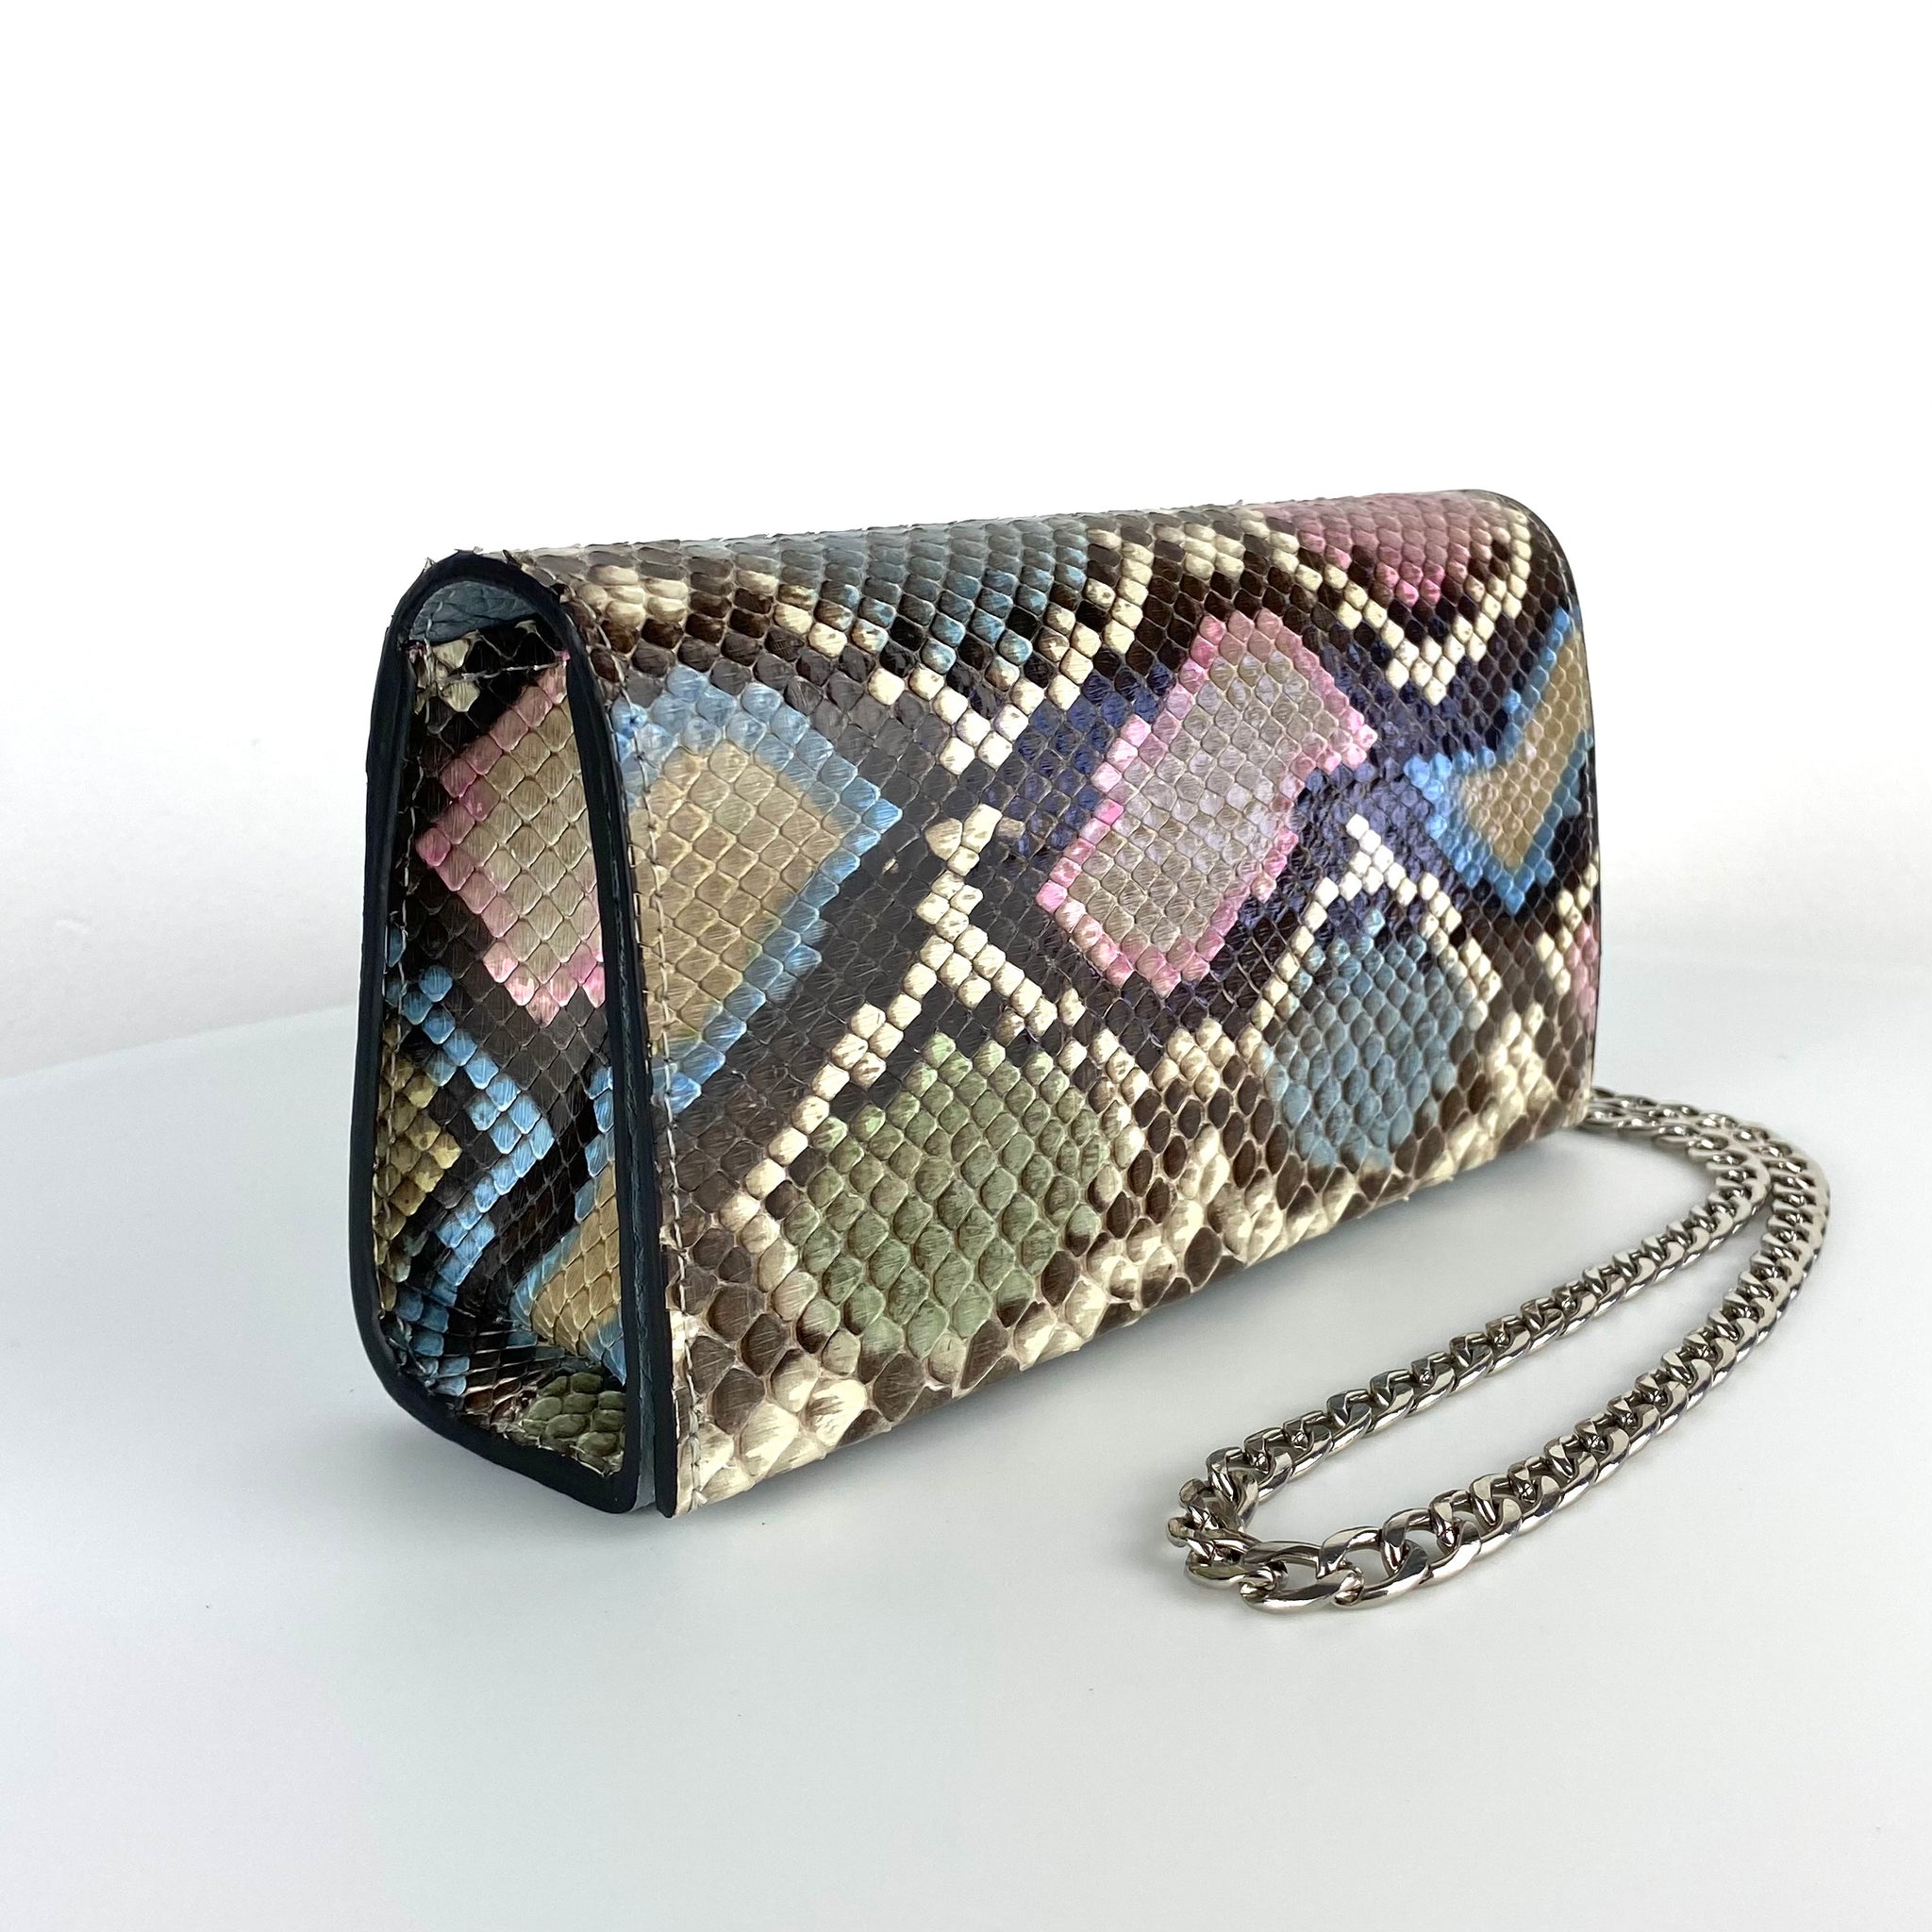 Genuine snakeskin bag for sale | Snake skin handbag, Leather bag women, Bags